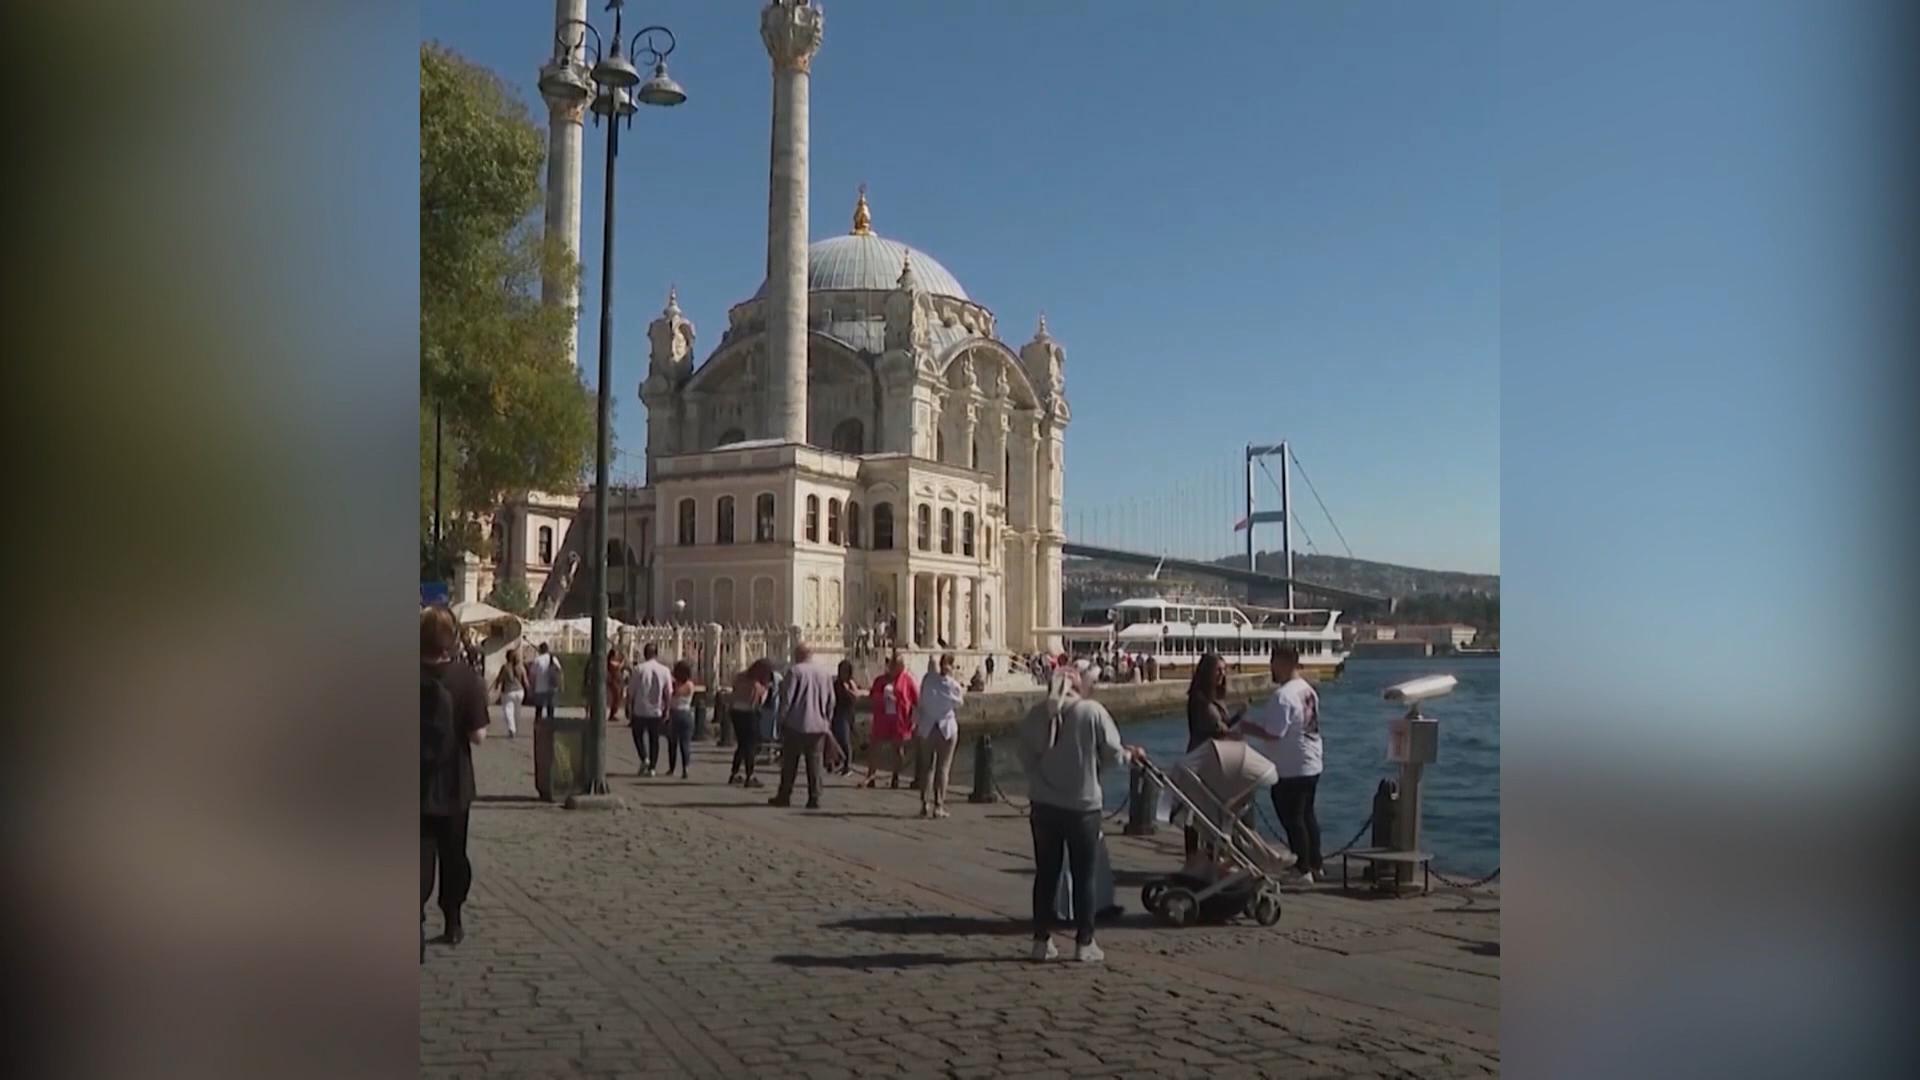 伊斯坦布尔是少数几个仍拥有通往俄罗斯直飞航班的欧洲城市之一，许多俄罗斯人购买飞往伊斯坦布尔的单程票，从而逃避战争。他们将土耳其视作临时避难所，也有些人买房创业，作长期打算。